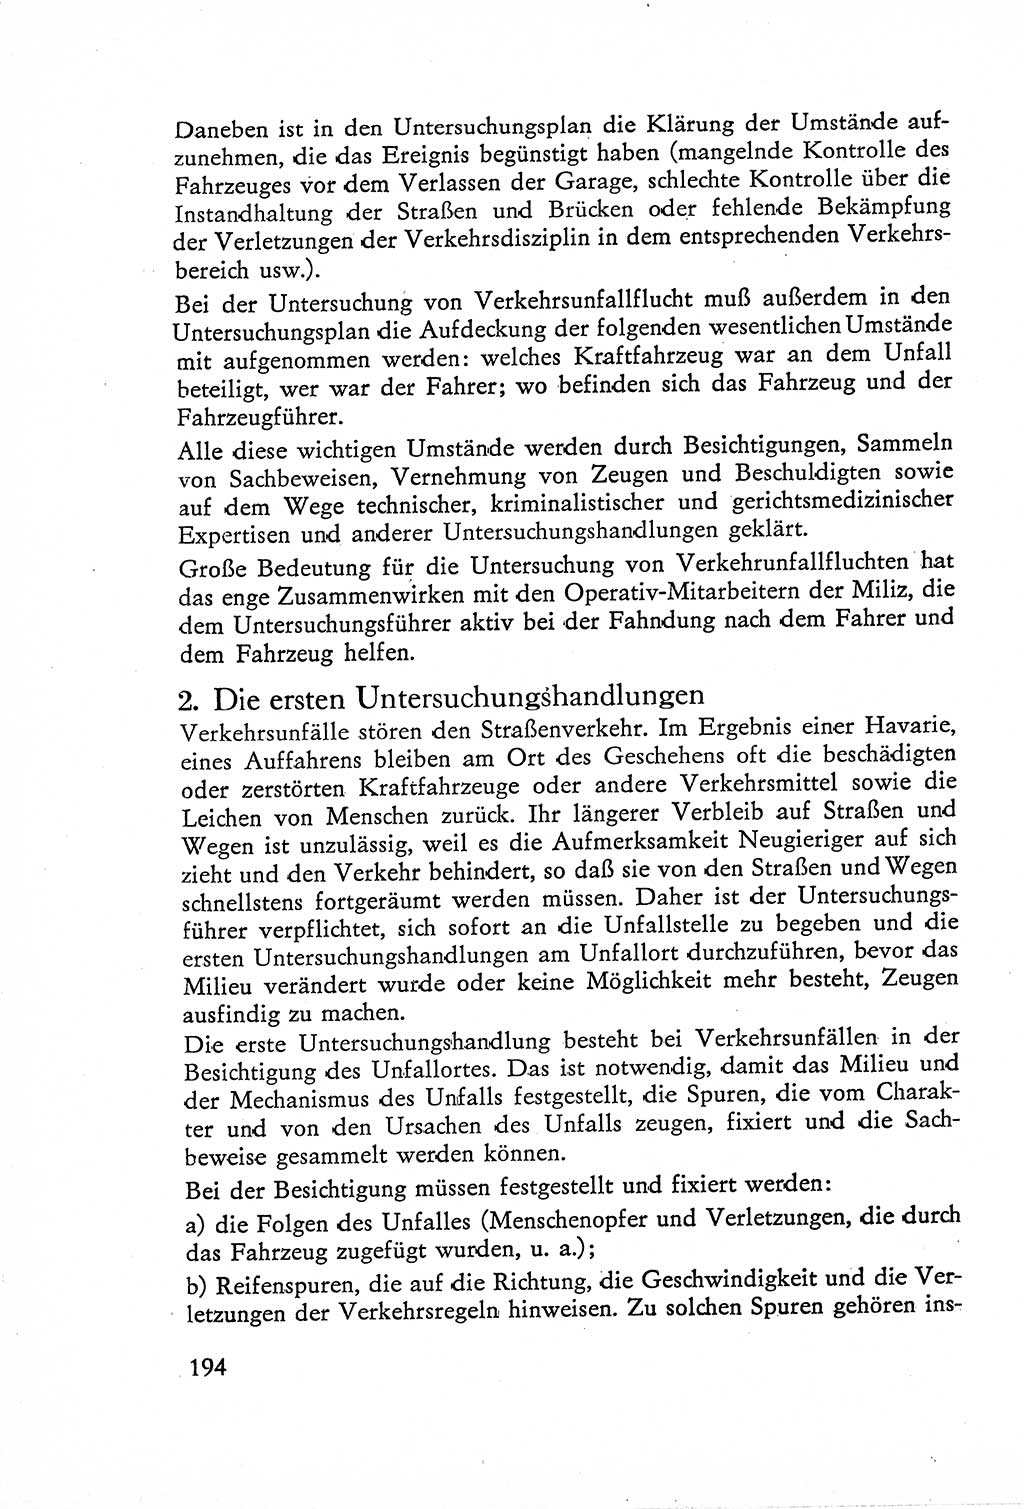 Die Untersuchung einzelner Verbrechensarten [Deutsche Demokratische Republik (DDR)] 1960, Seite 194 (Unters. Verbr.-Art. DDR 1960, S. 194)